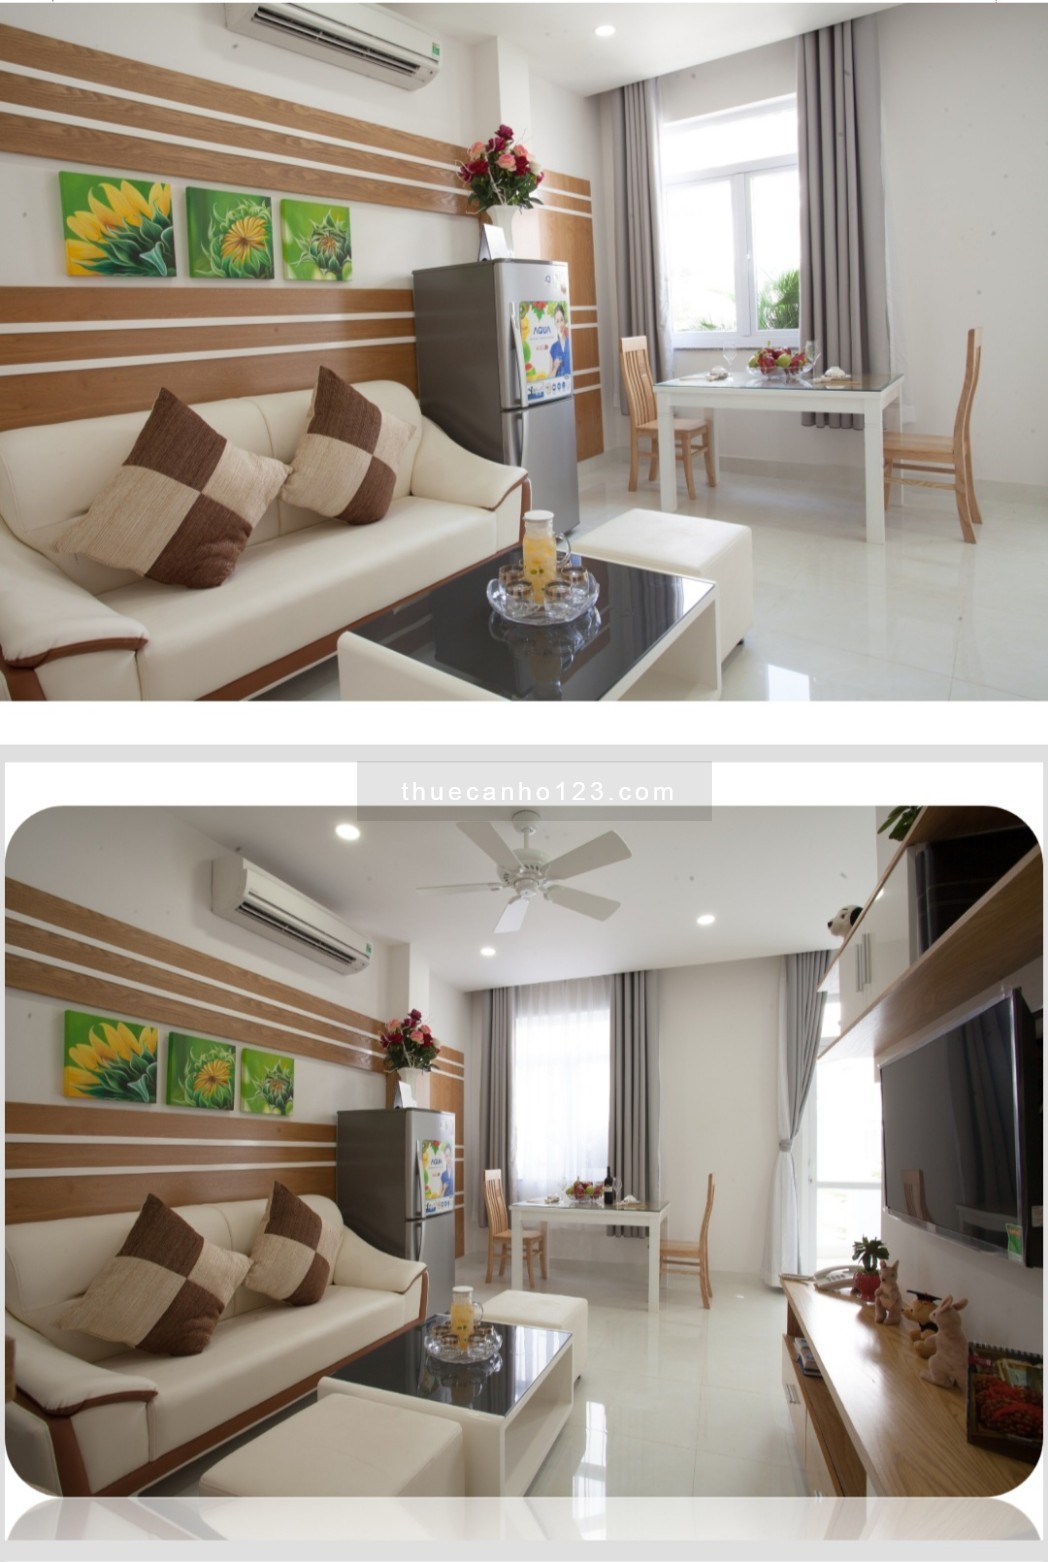 Căn hộ cao cấp 1 phòng ngủ full nội thất ngay KDC Hm Lam quận 7